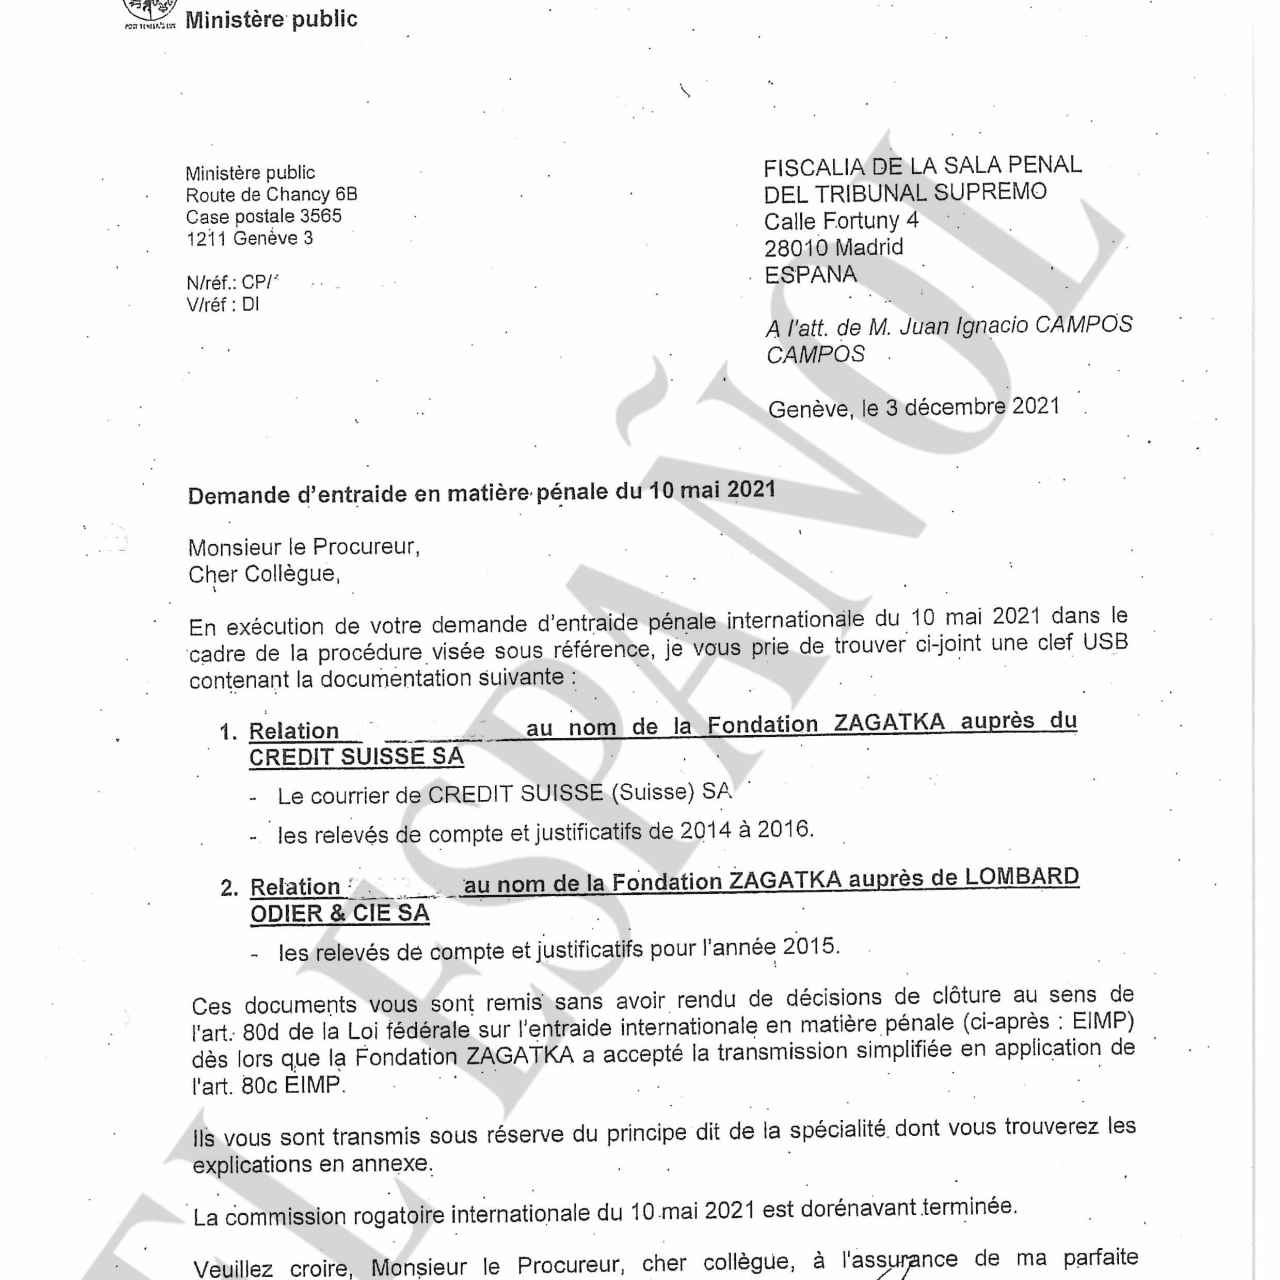 Documento del fiscal suizo Bertossa sobre la remisión de información relacionada con la Fundación Zagatka./